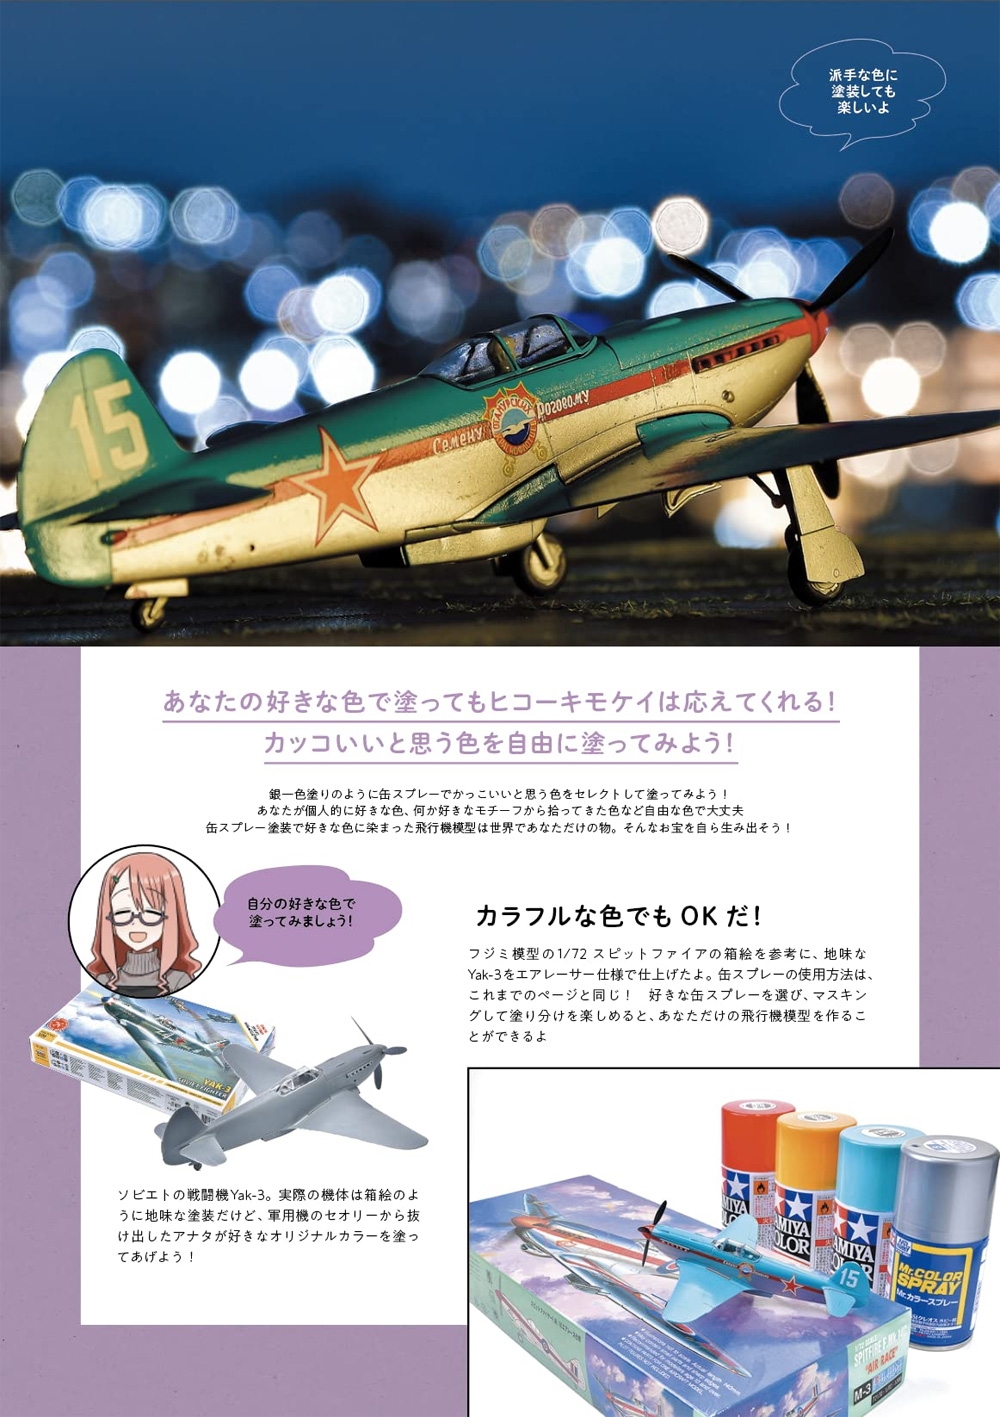 初めて作るヒコーキ模型 本 (大日本絵画 航空機関連書籍 No.23354-5) 商品画像_3